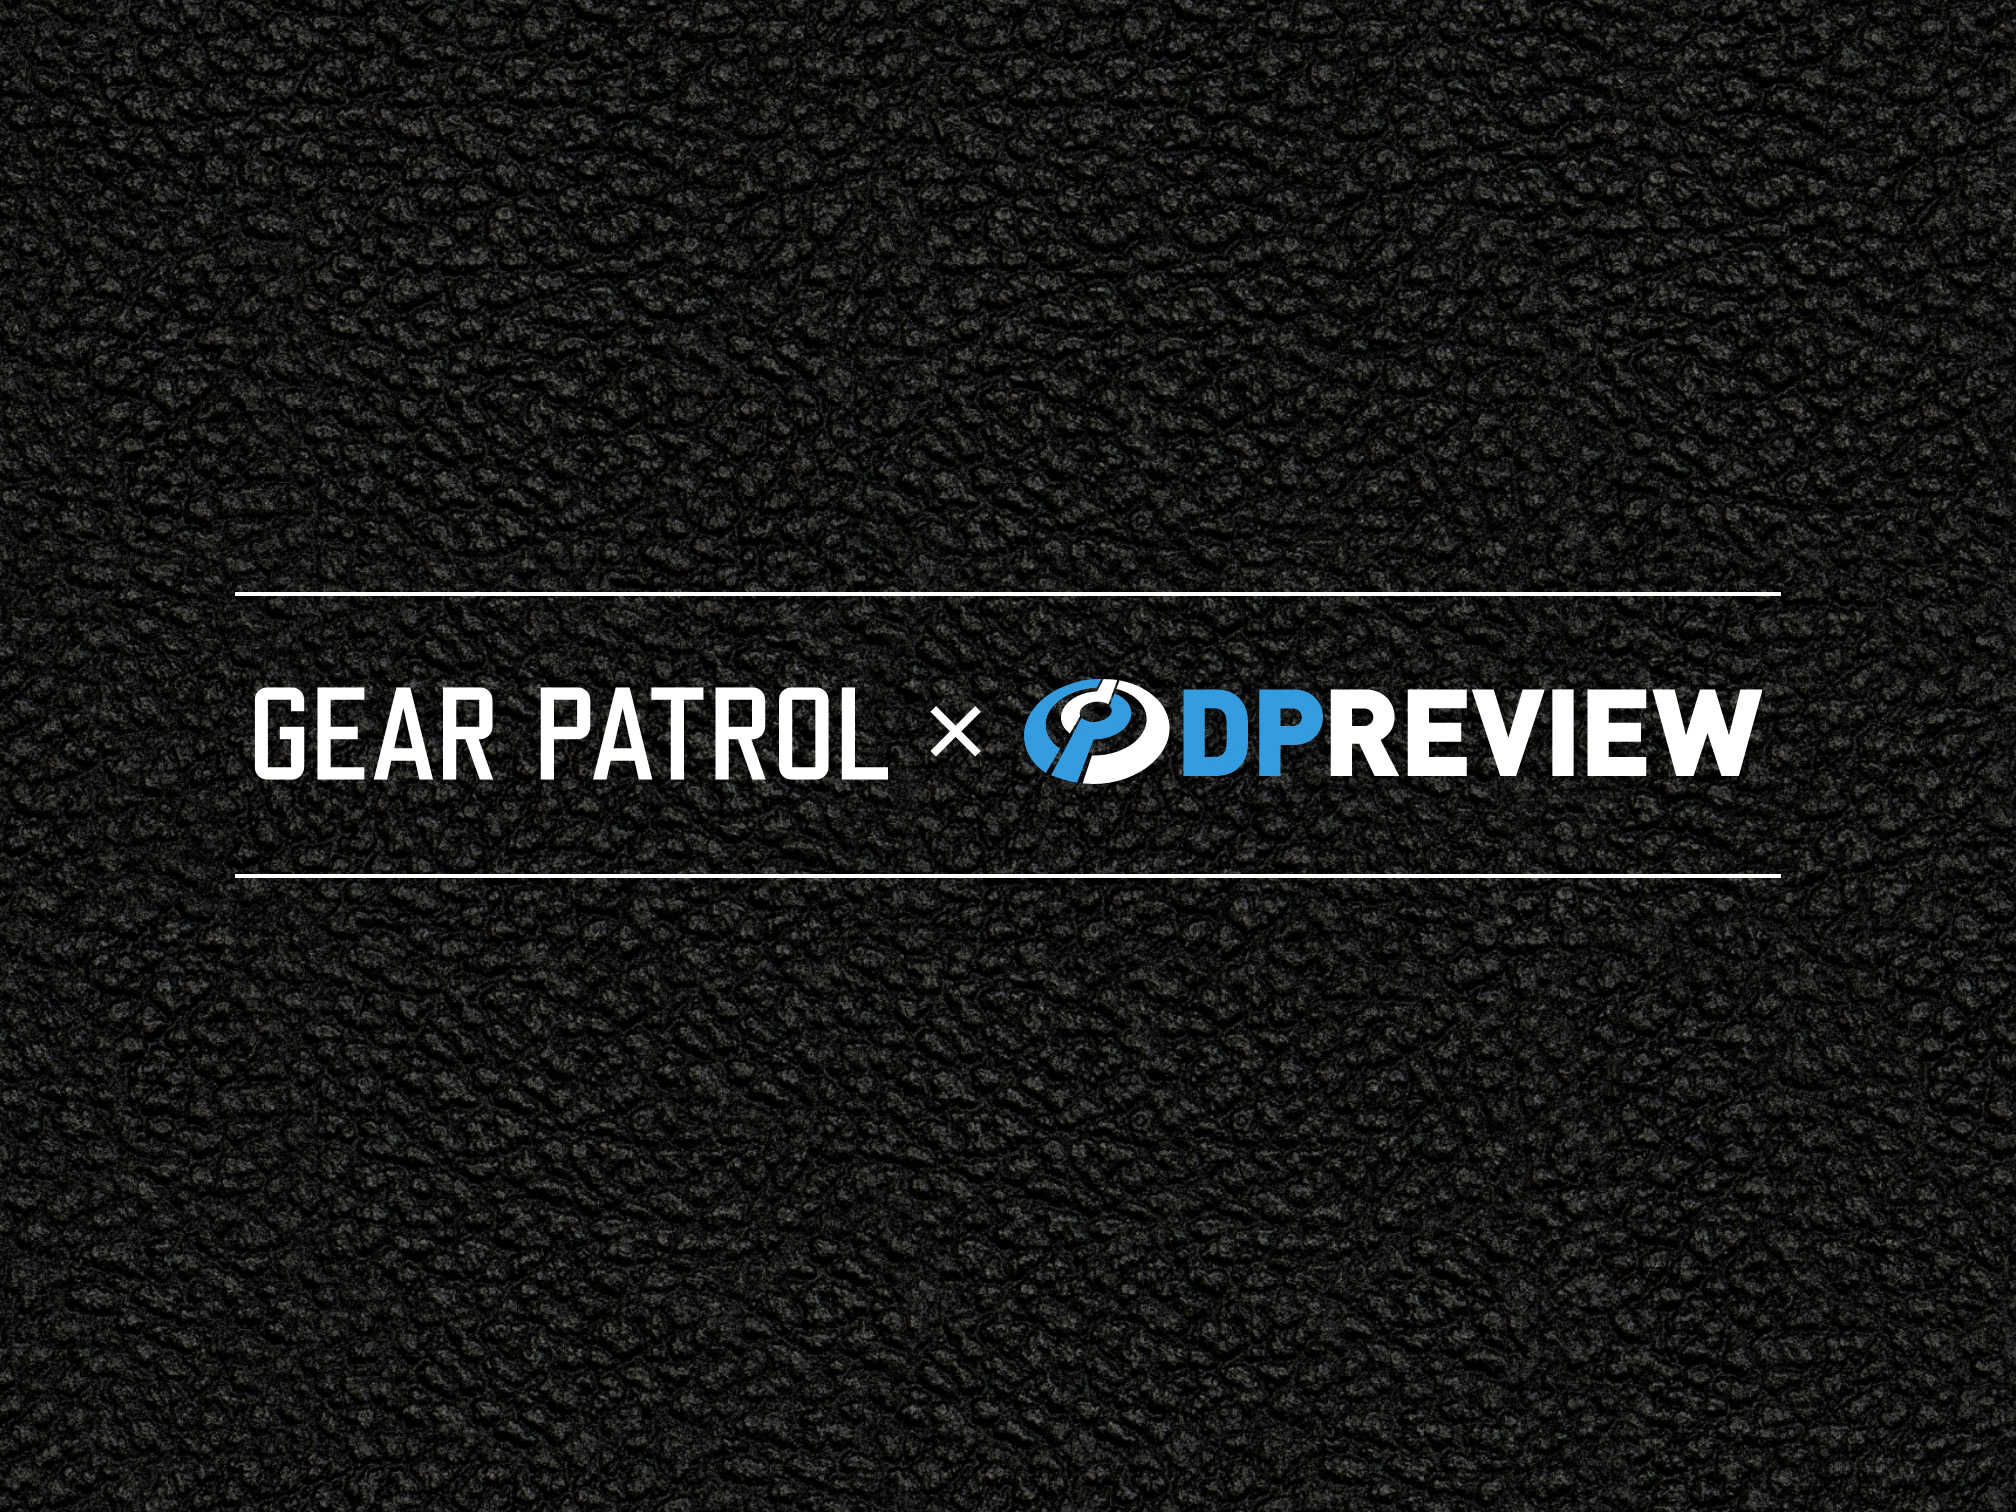 老舗カメラレビューサイトDPReviewの存続が決定。テック系サイトGear Patrolが買収